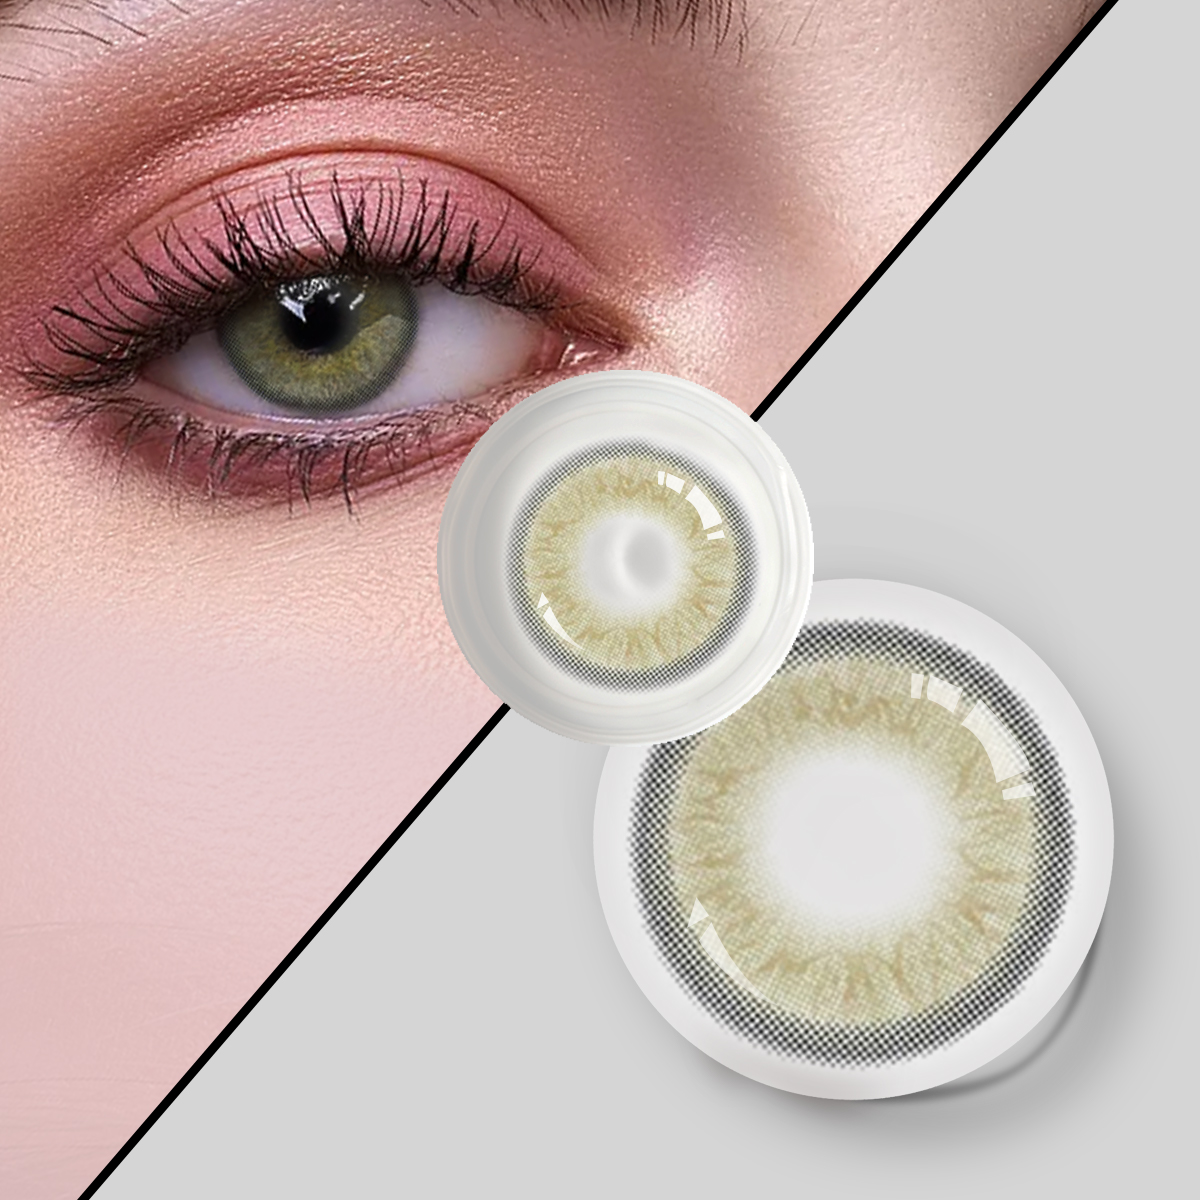 Dbeyes 3 ton yıllık kontakt lensler yeni stil toptan renkli göz kontakt lensler